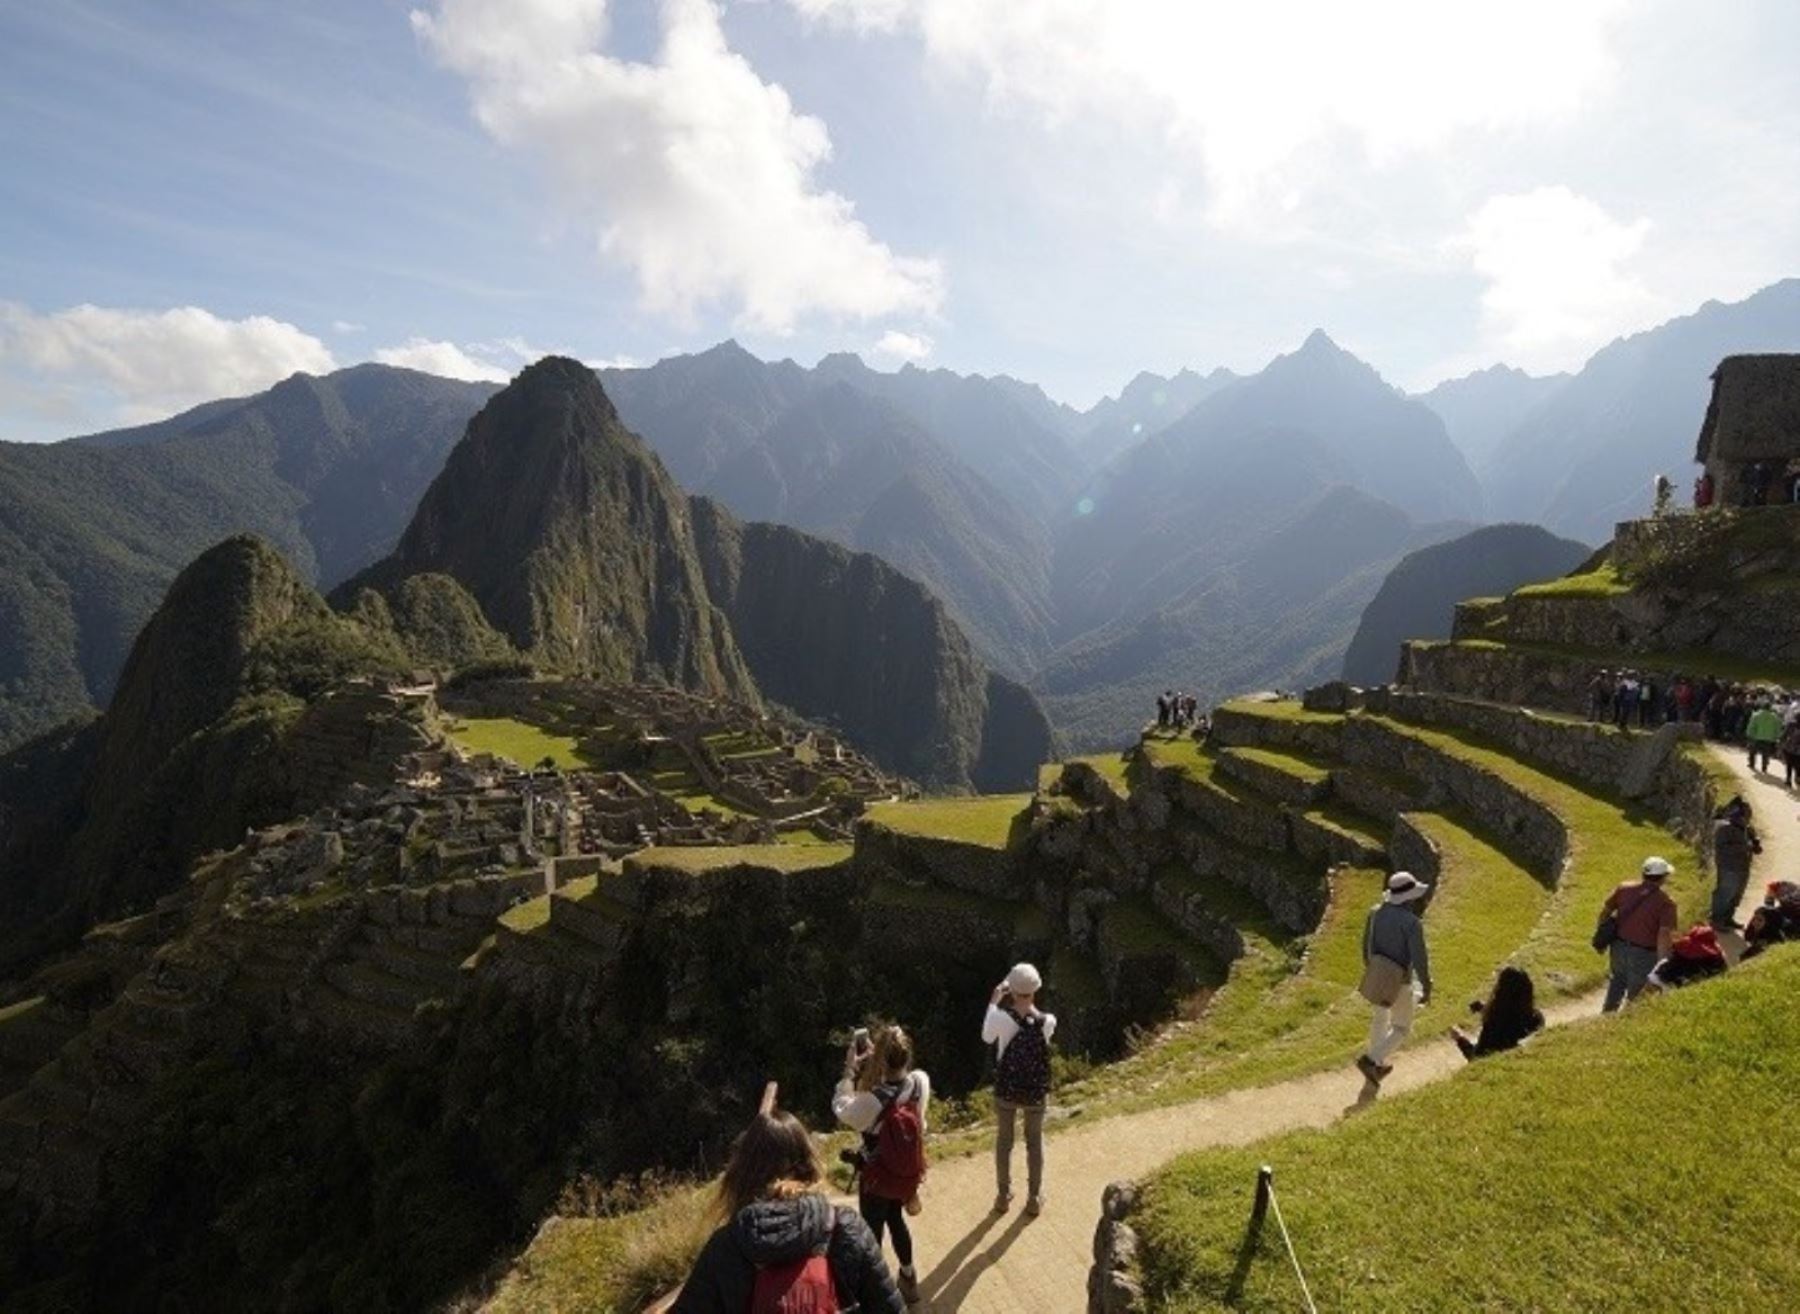 Operadores turísticos de Cusco presentan propuestas para el uso sostenible de Machu Picchu, el emblema turístico de Perú. ANDINA/Difusión